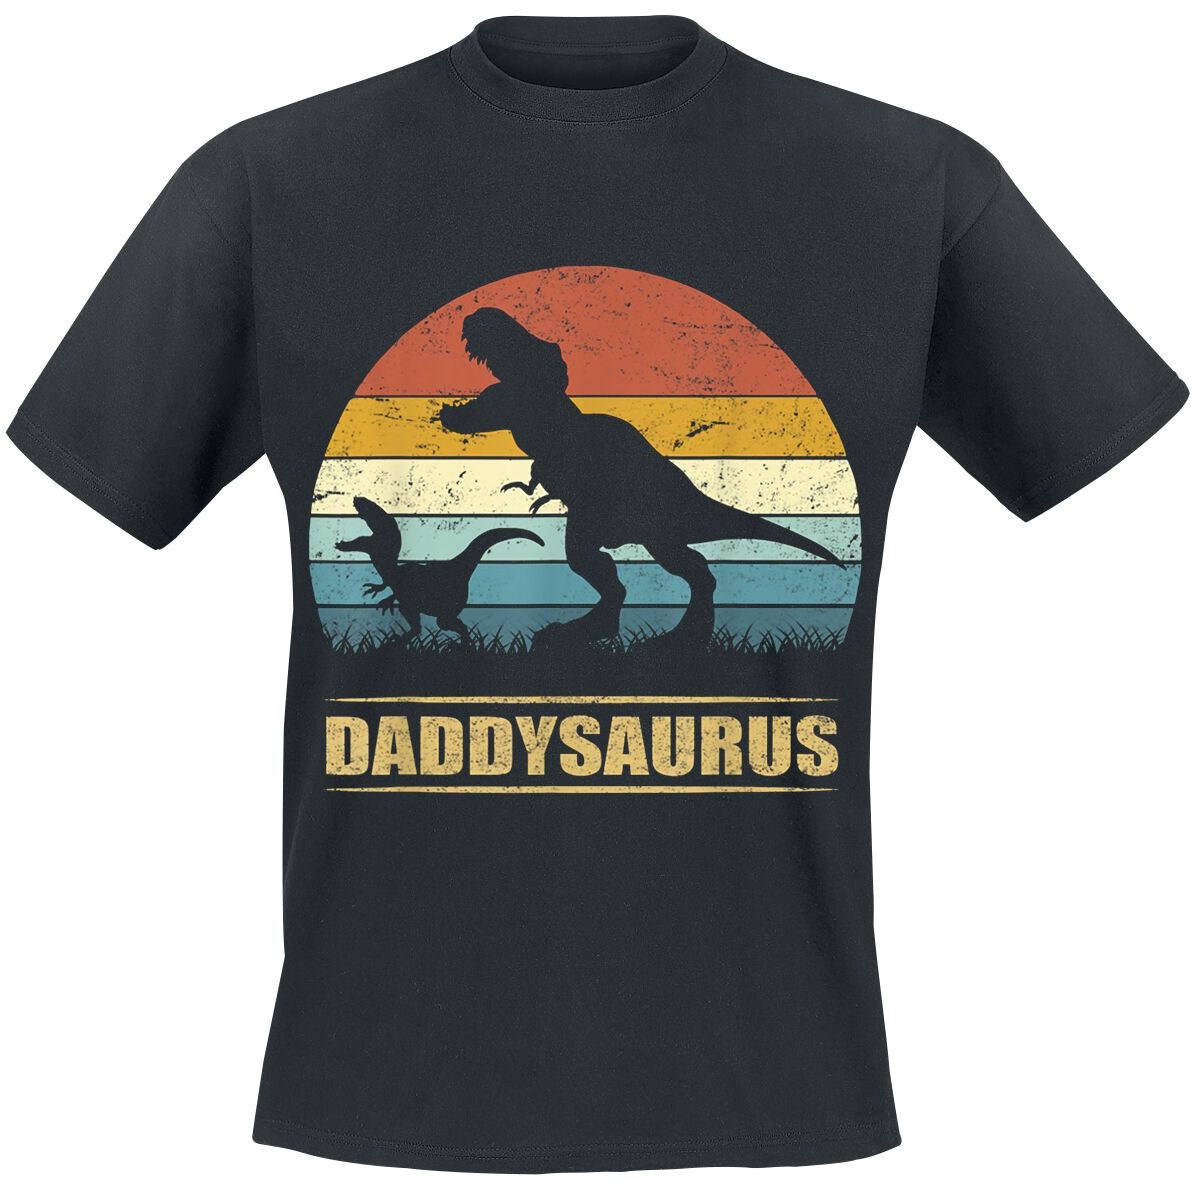 Familie & Freunde T-Shirt - Daddysaurus 3 - S bis 4XL - für Männer - Größe S - schwarz